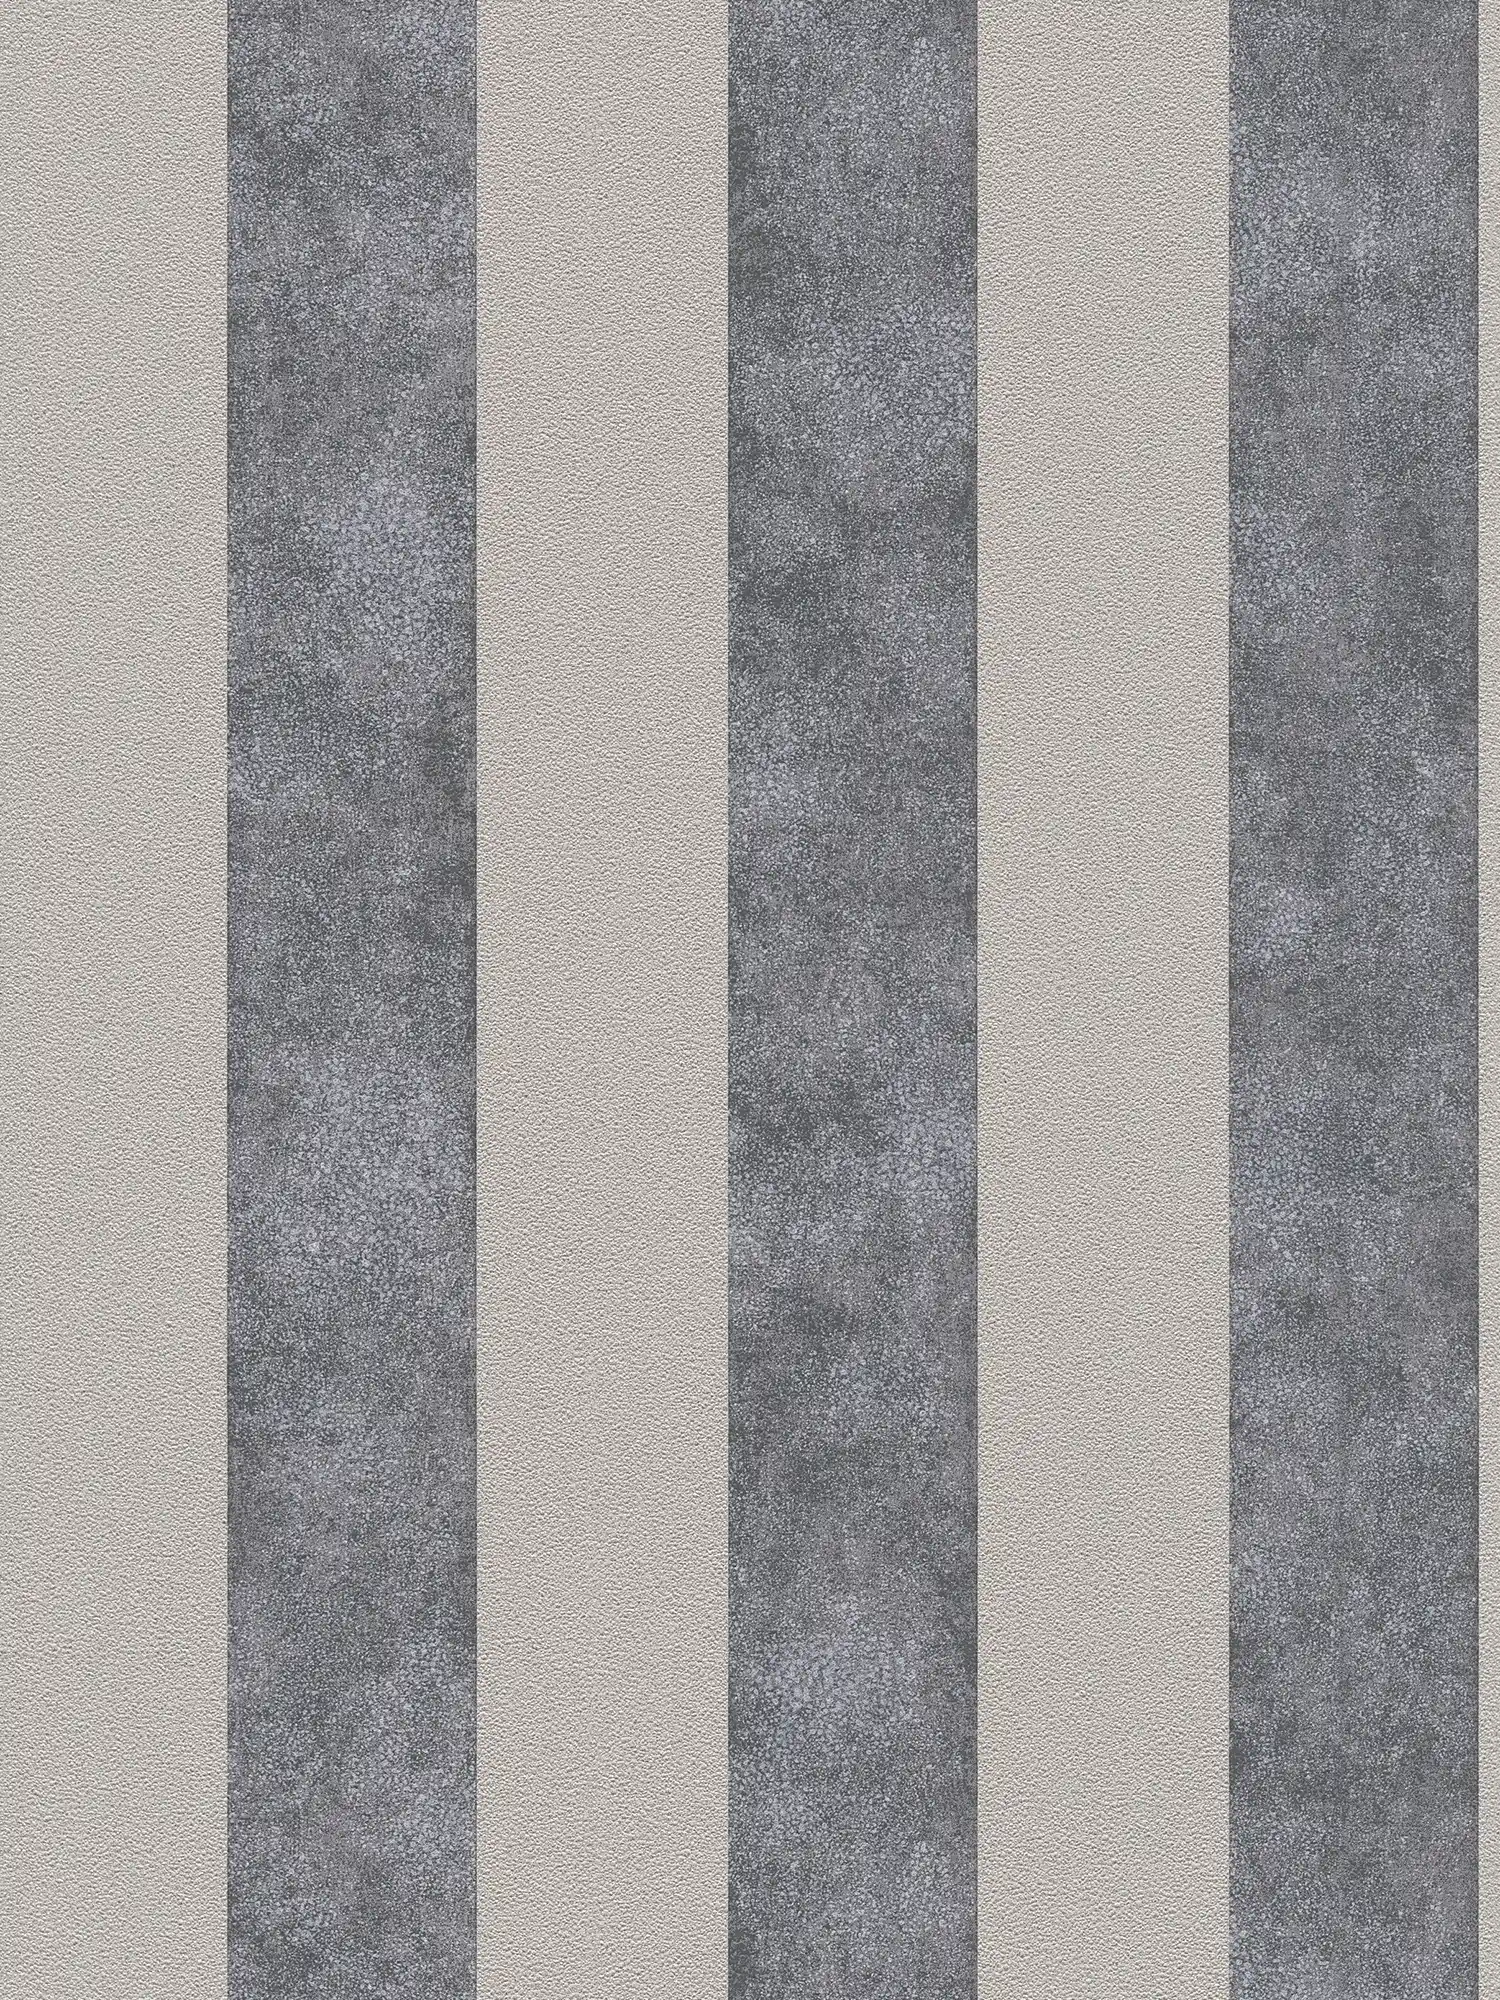 Blokstreepbehang met kleur- en structuurpatroon - zwart, grijs, beige
